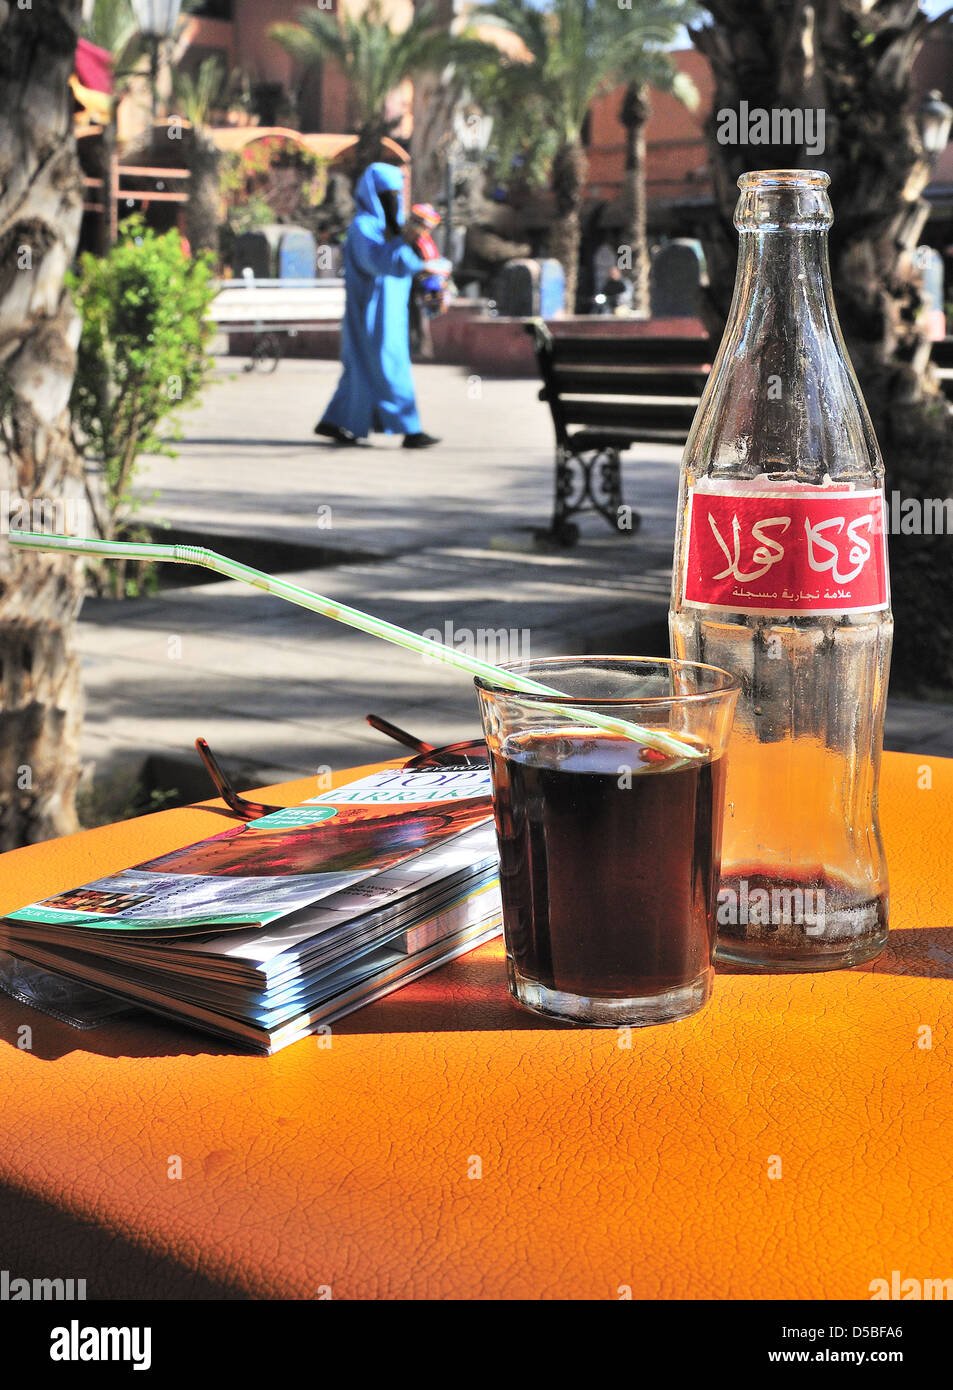 Tisch im Café mit Marrakesch Reiseführer, arabischer Coca Cola Flasche und Vollglas und marokkanische Dame über die piazza in Marrakesch, Marokko Stockfoto